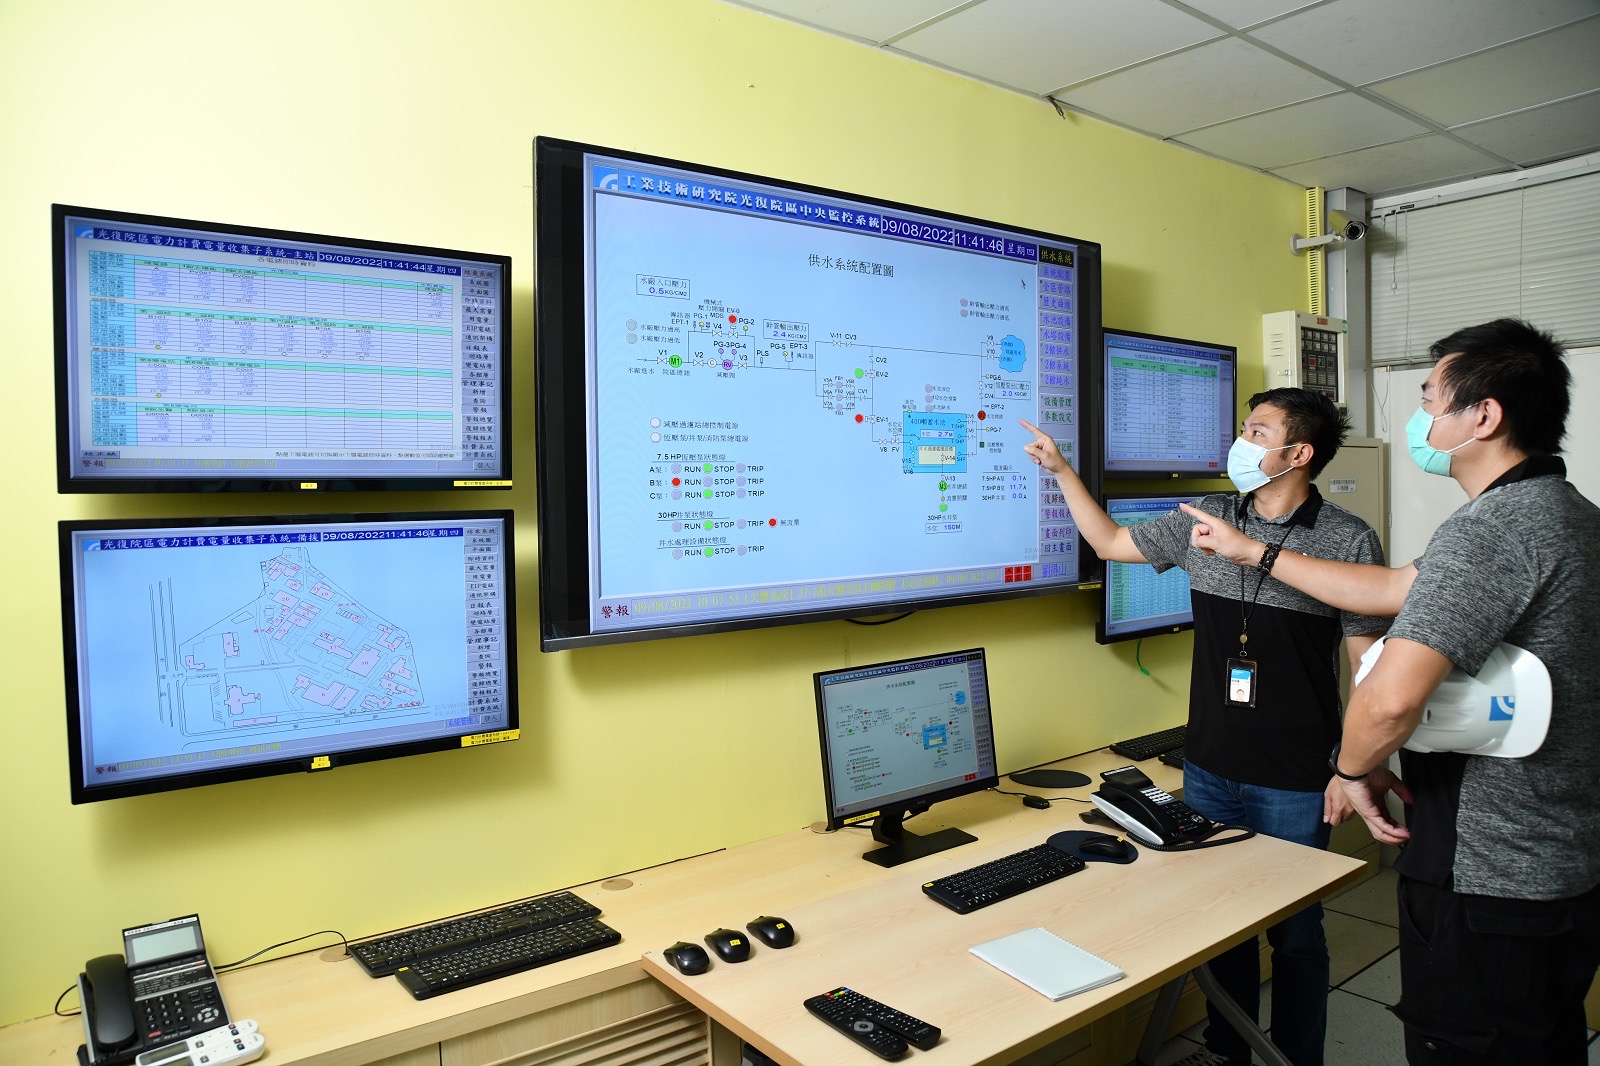 工研院自行开发的「能源资讯平台」可将用电资讯透明可视化、跨系统整合管理。图/工研院提供